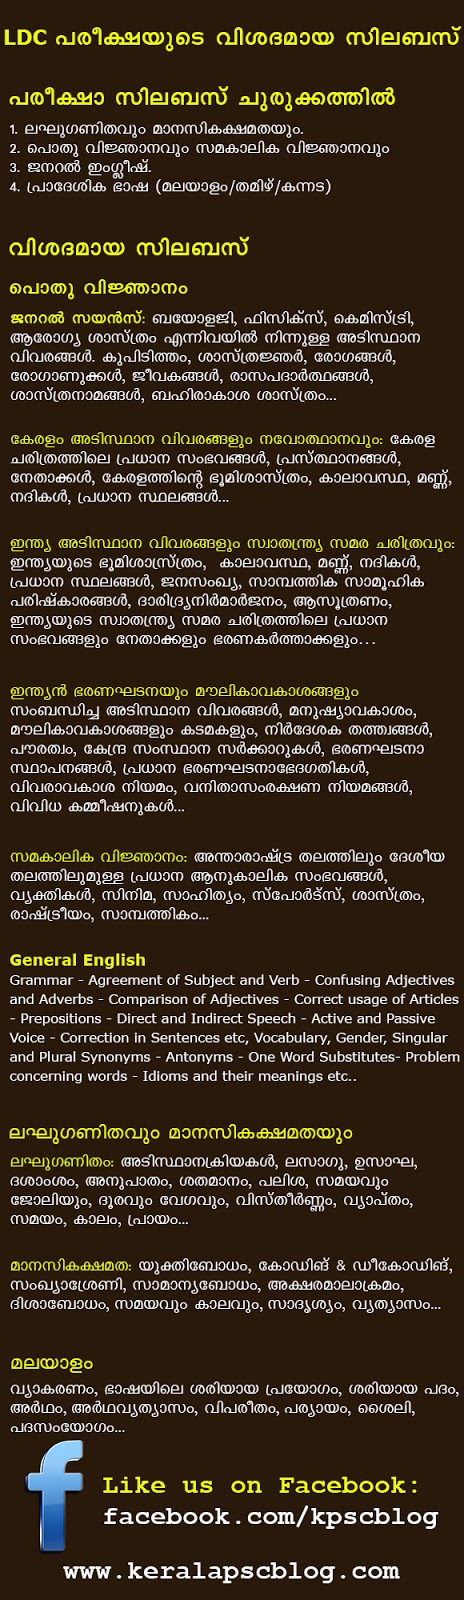 Detailed Syllabus of Kerala PSC Lower Division Clerk [LDC] Exam 2013-2014